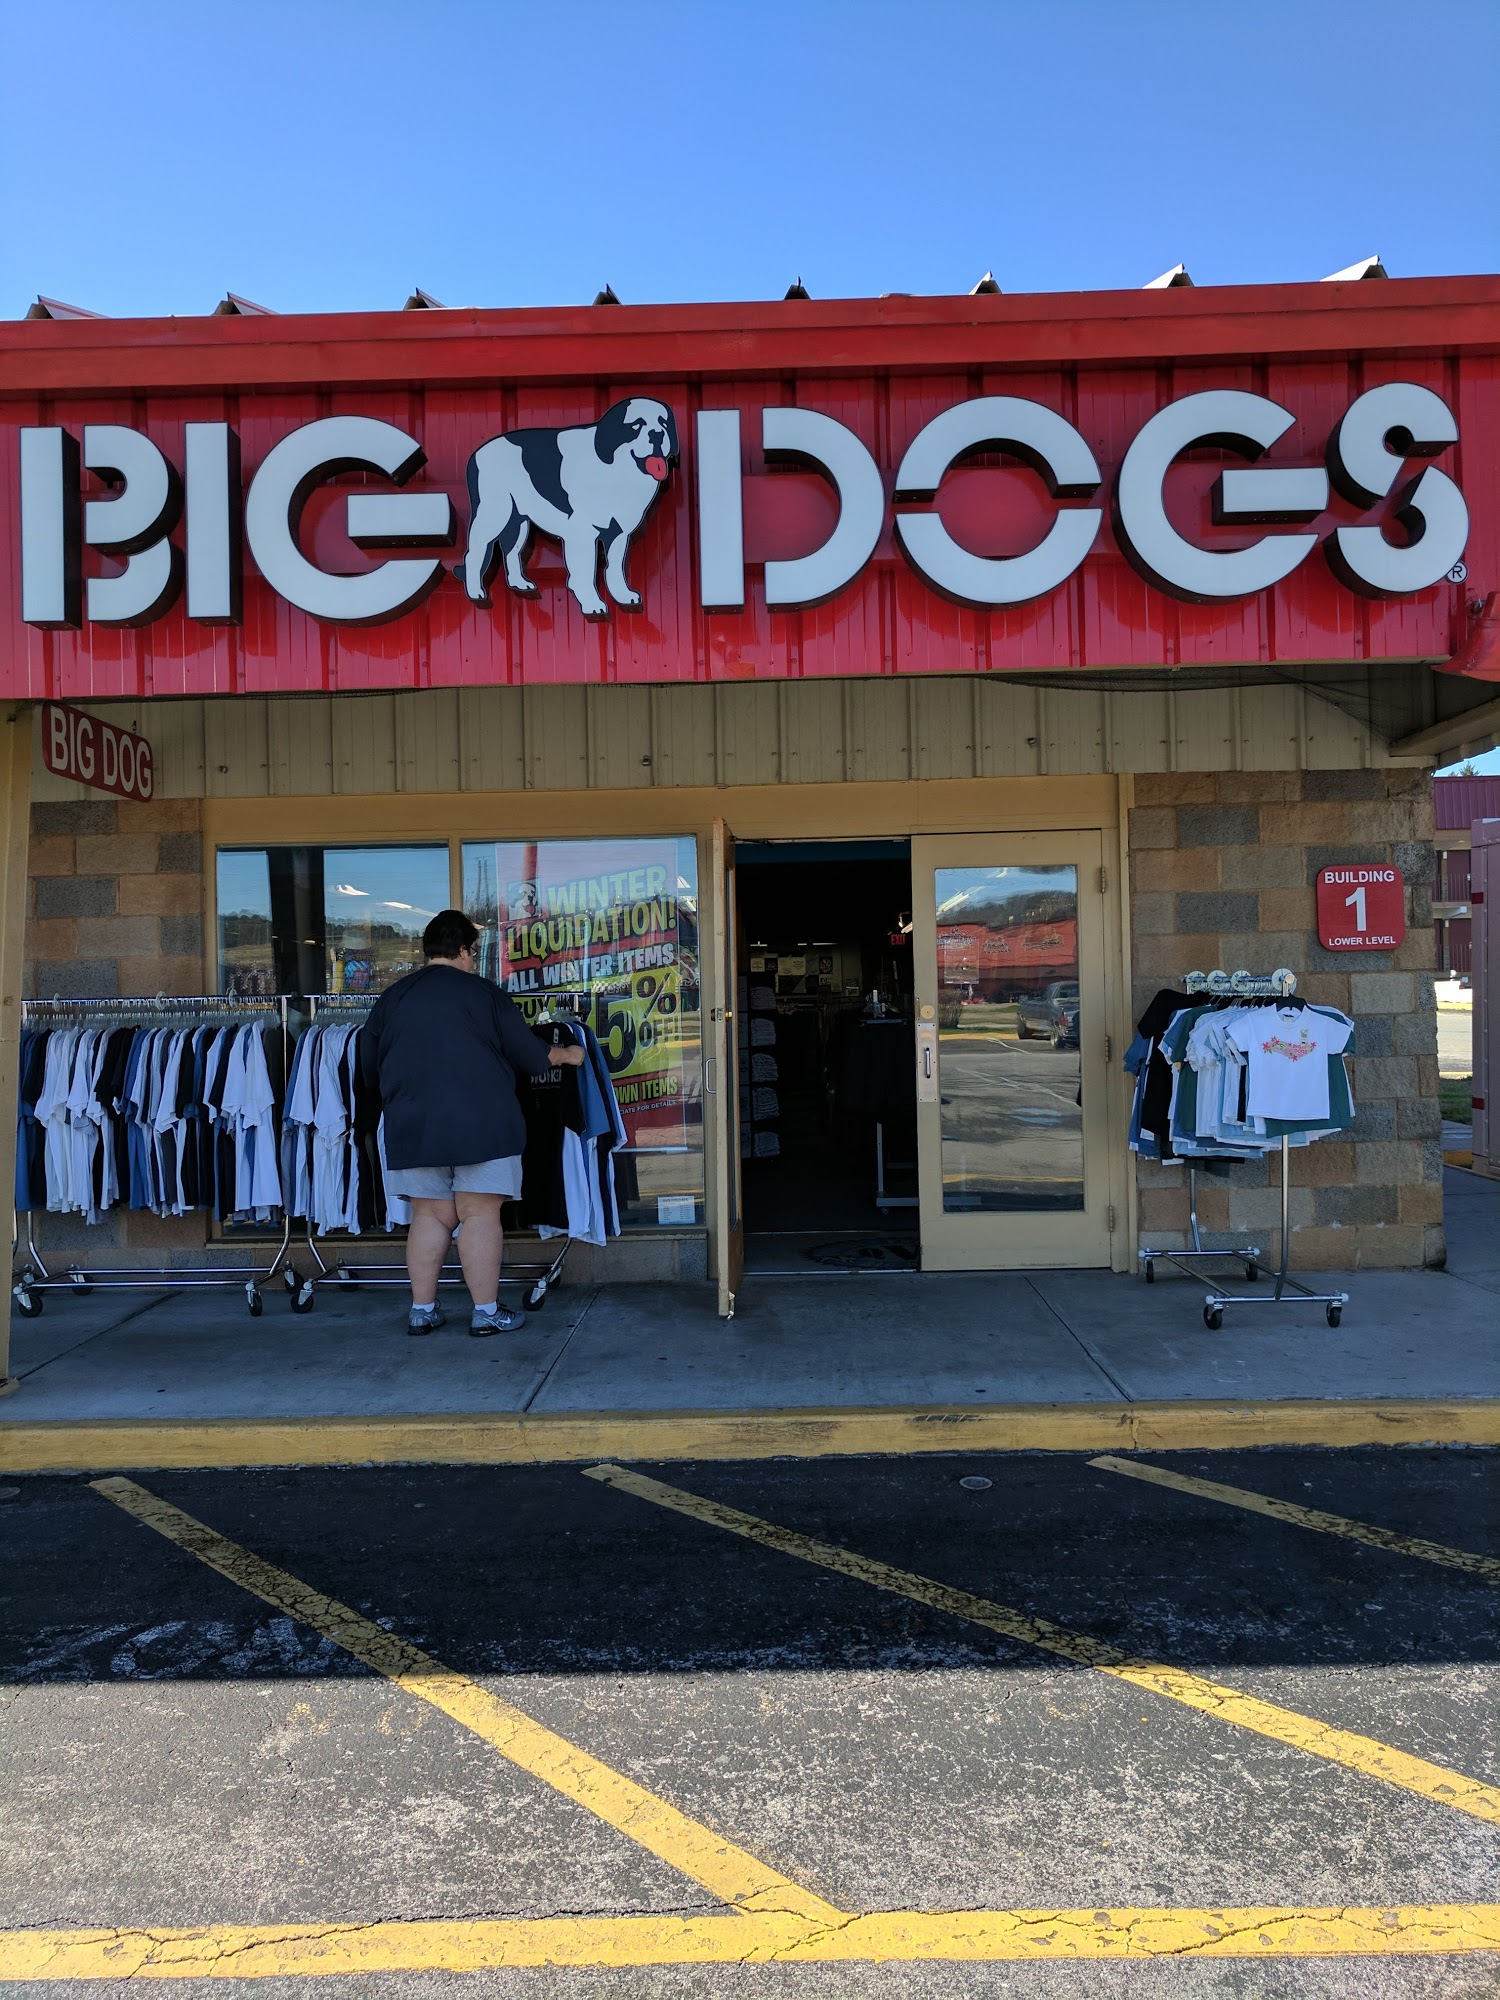 Big Dog Sportswear